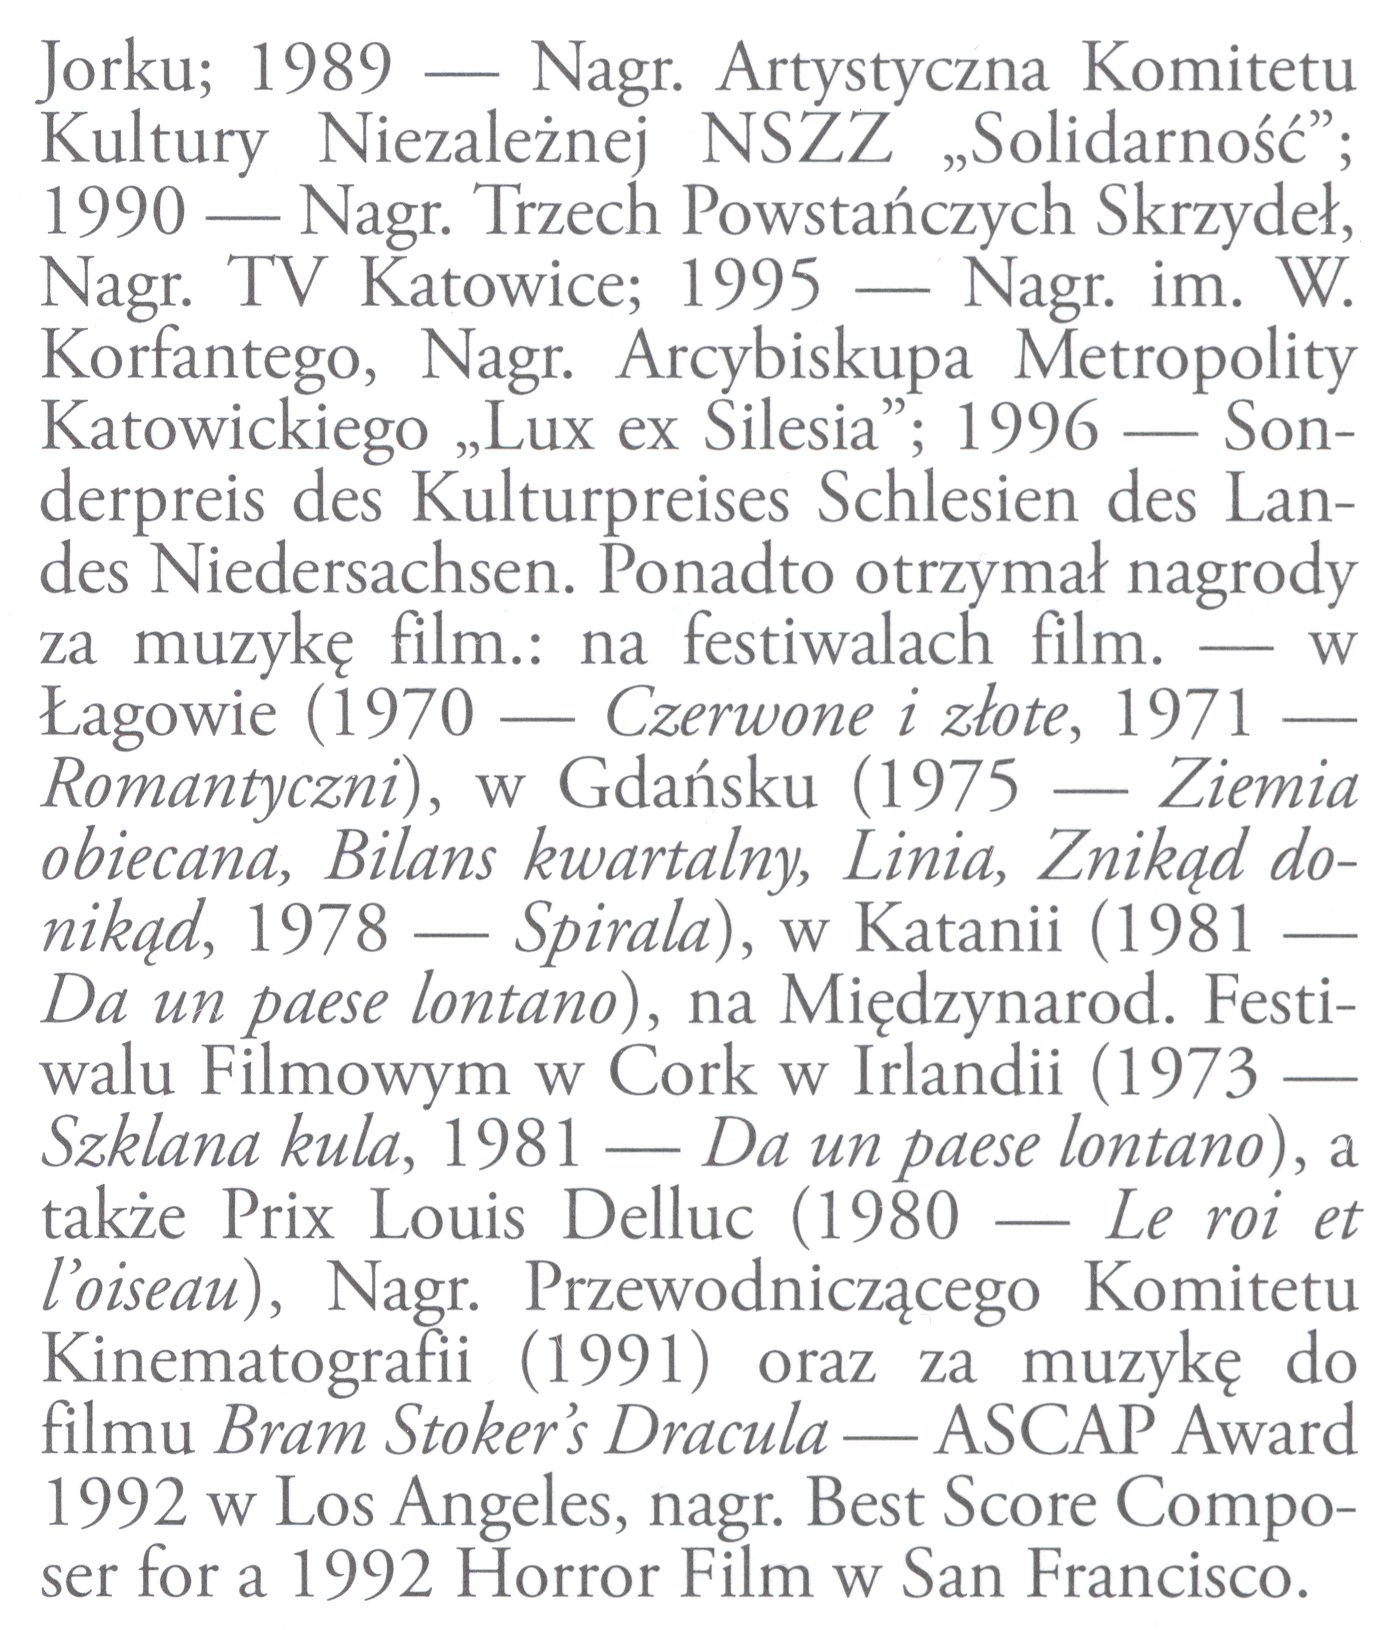 Wikipedia, Encyklopedia Muzyczna PWM, Items with OTRS permission confirmed, Self-published work, Wik